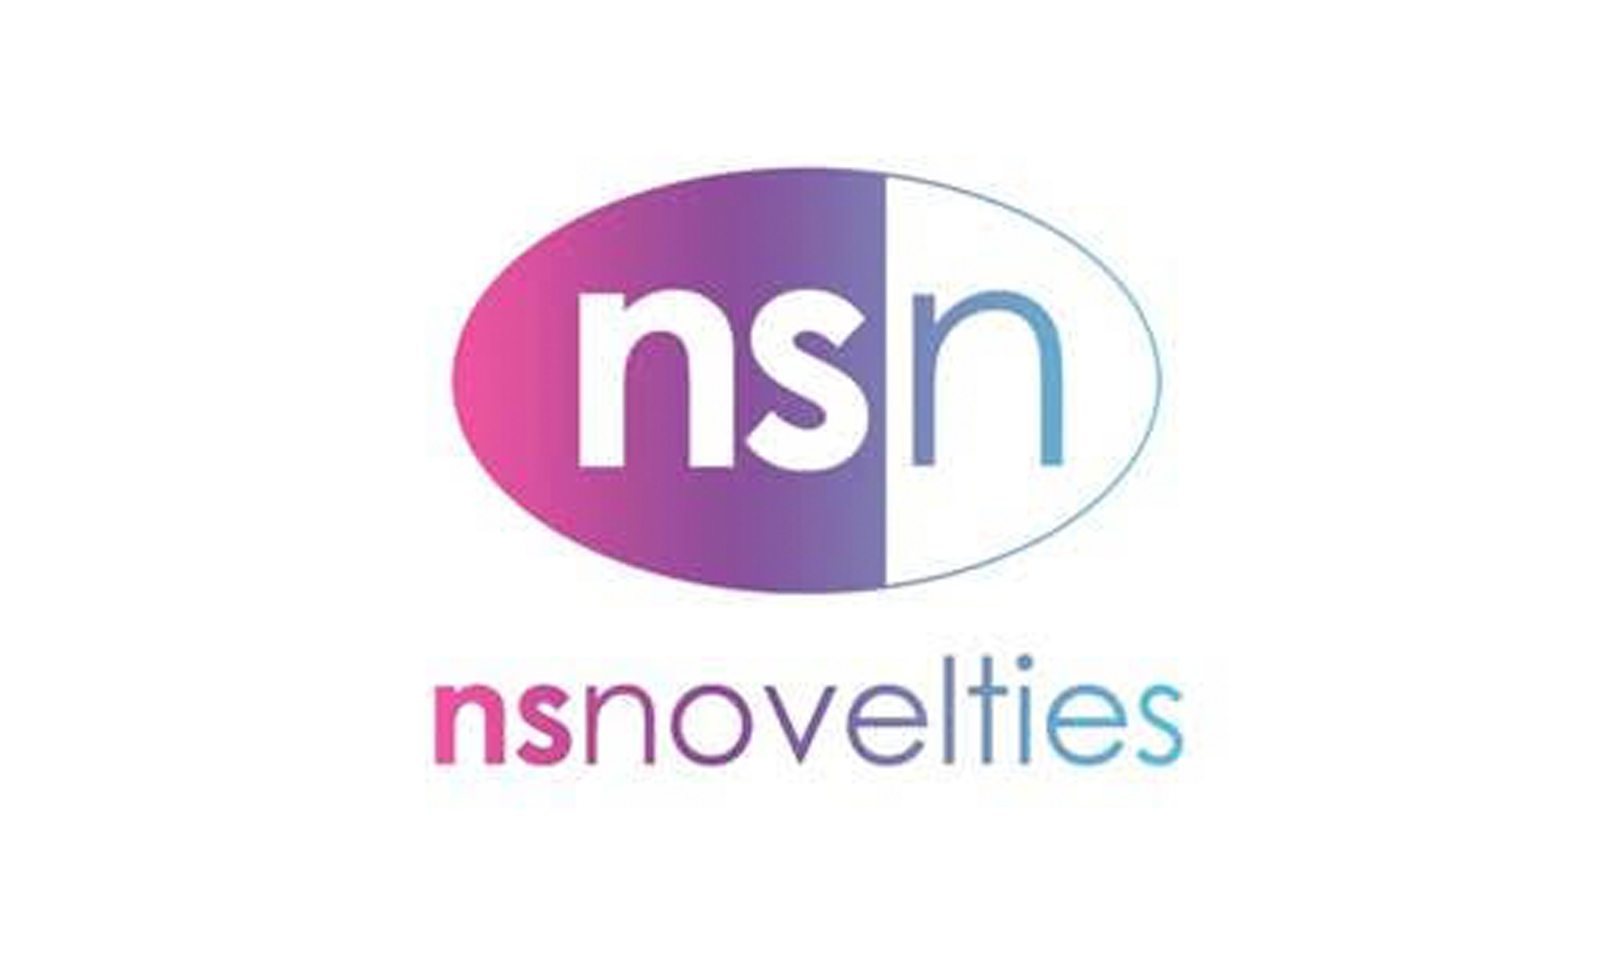 NS Novelties Earns Noms at AVN Awards, ‘O’ Awards